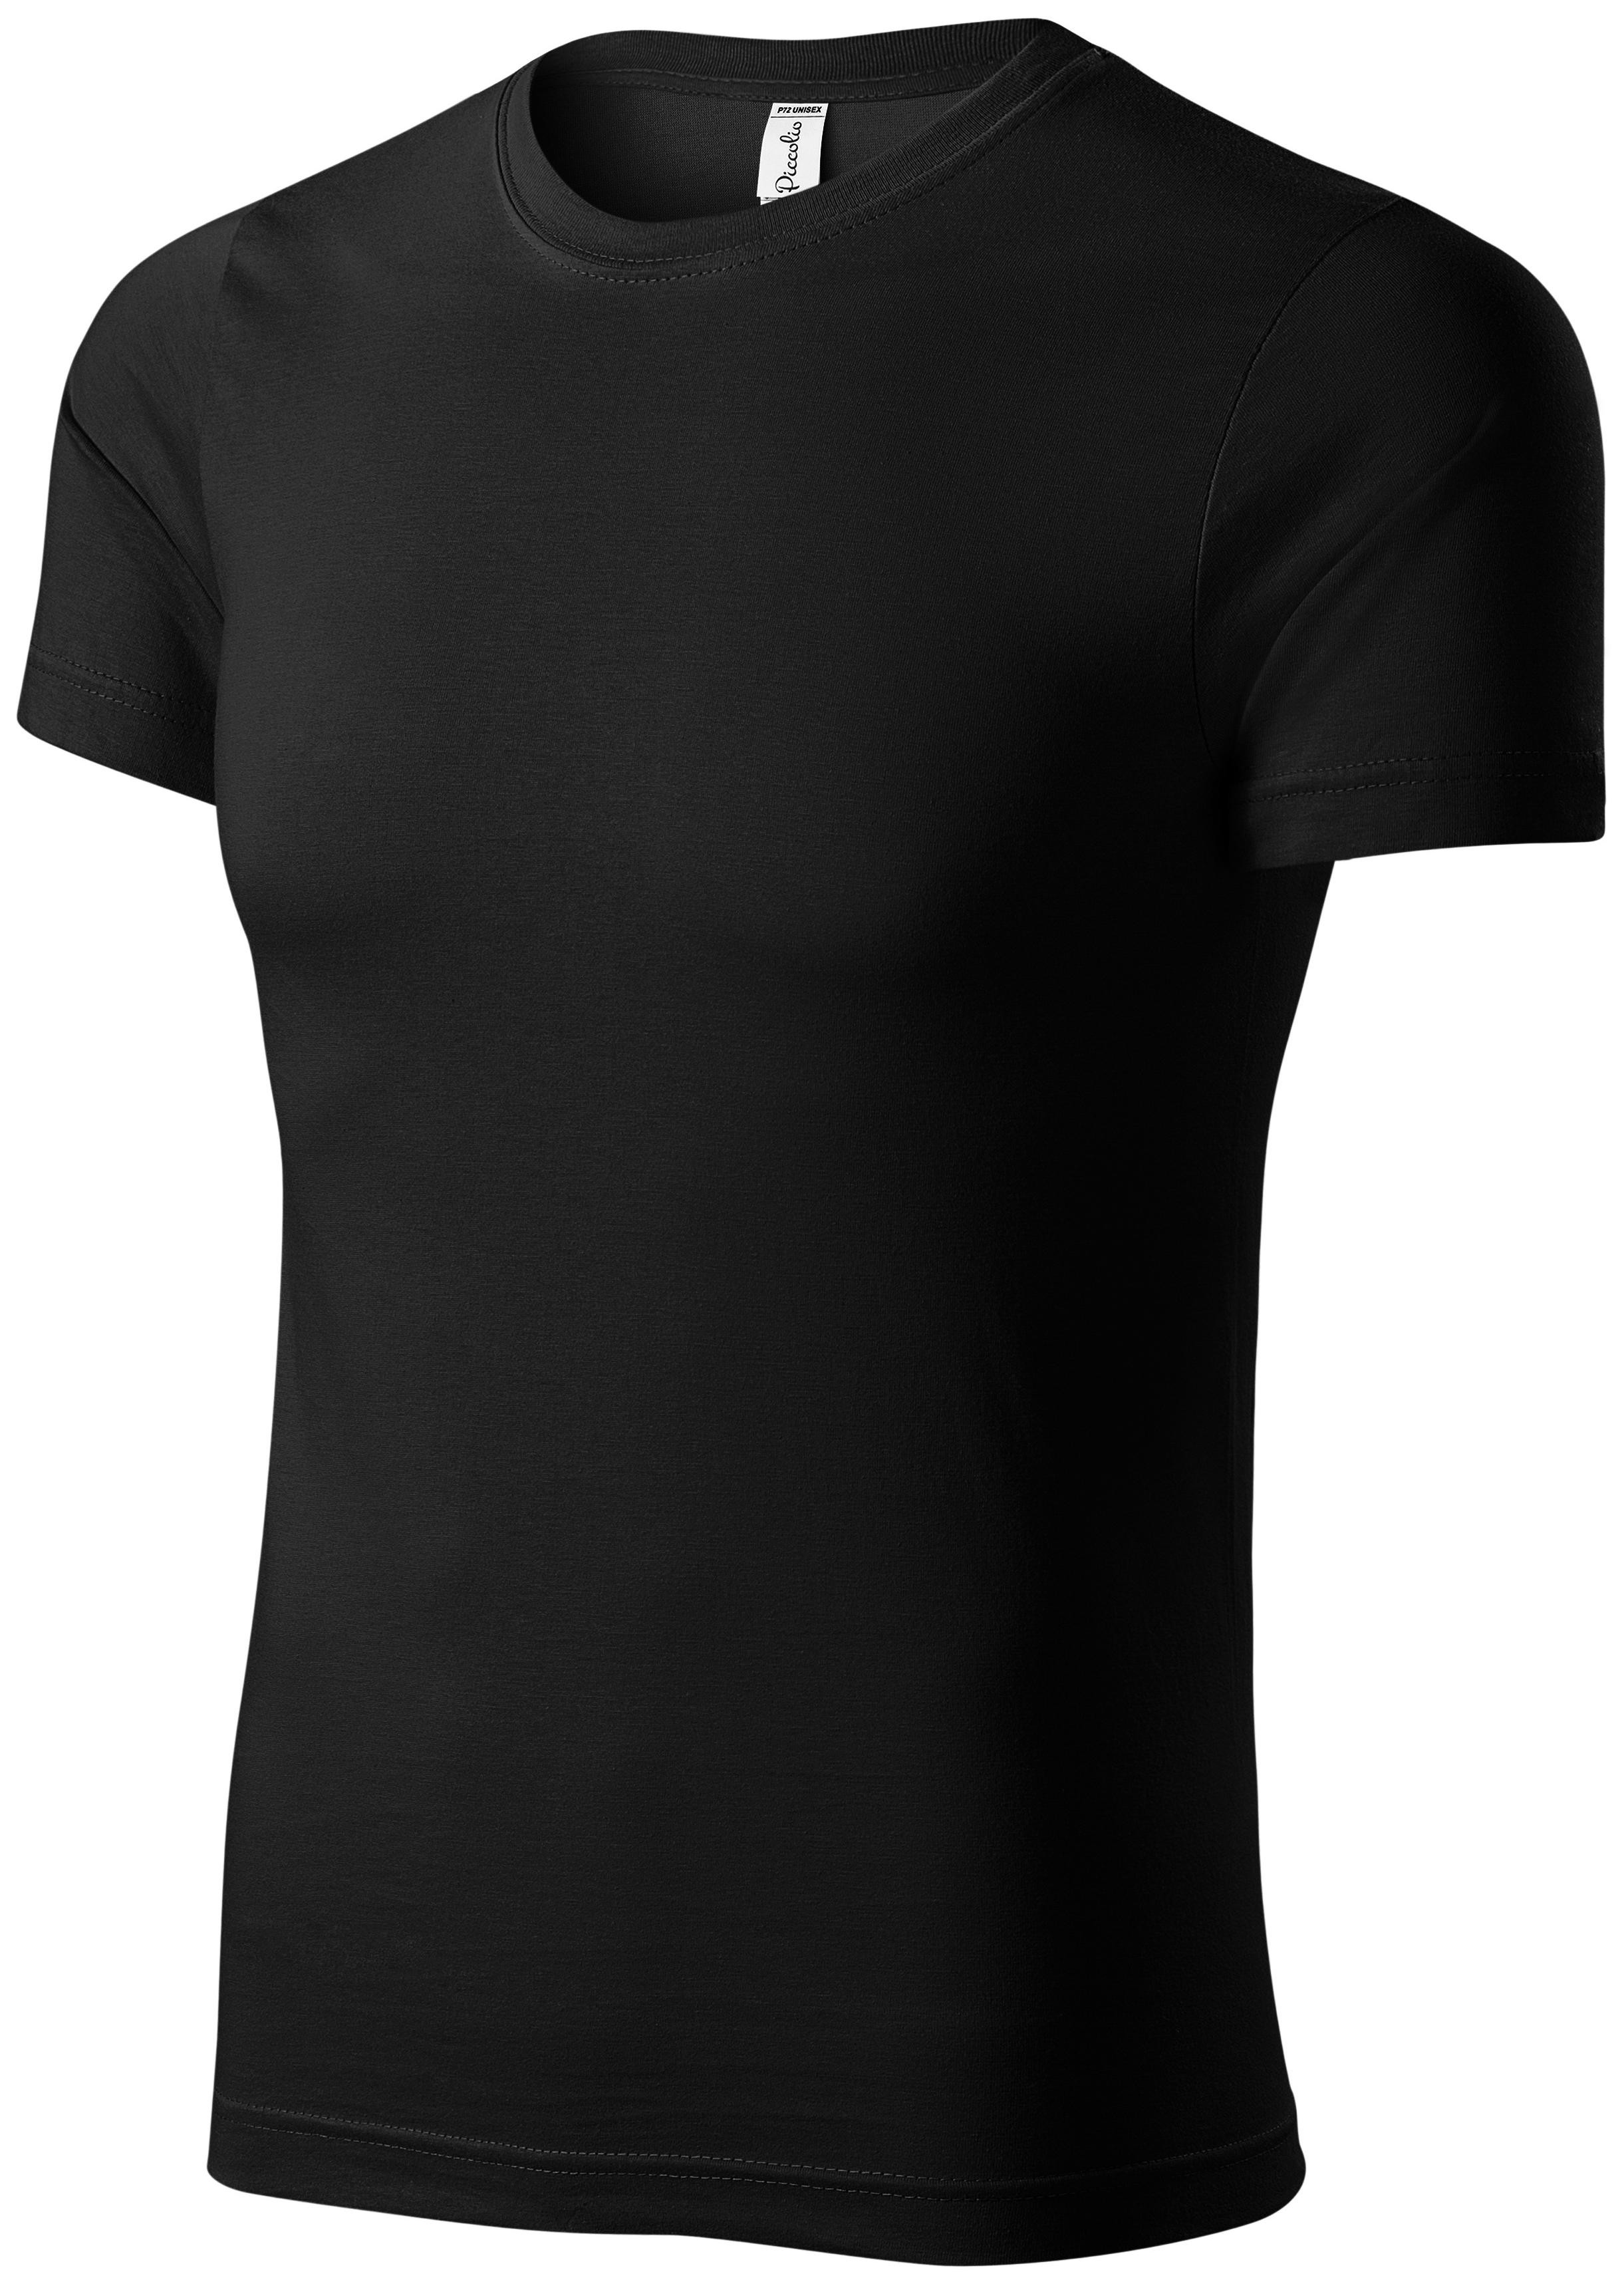 Detské ľahké tričko, čierna, 110cm / 4roky